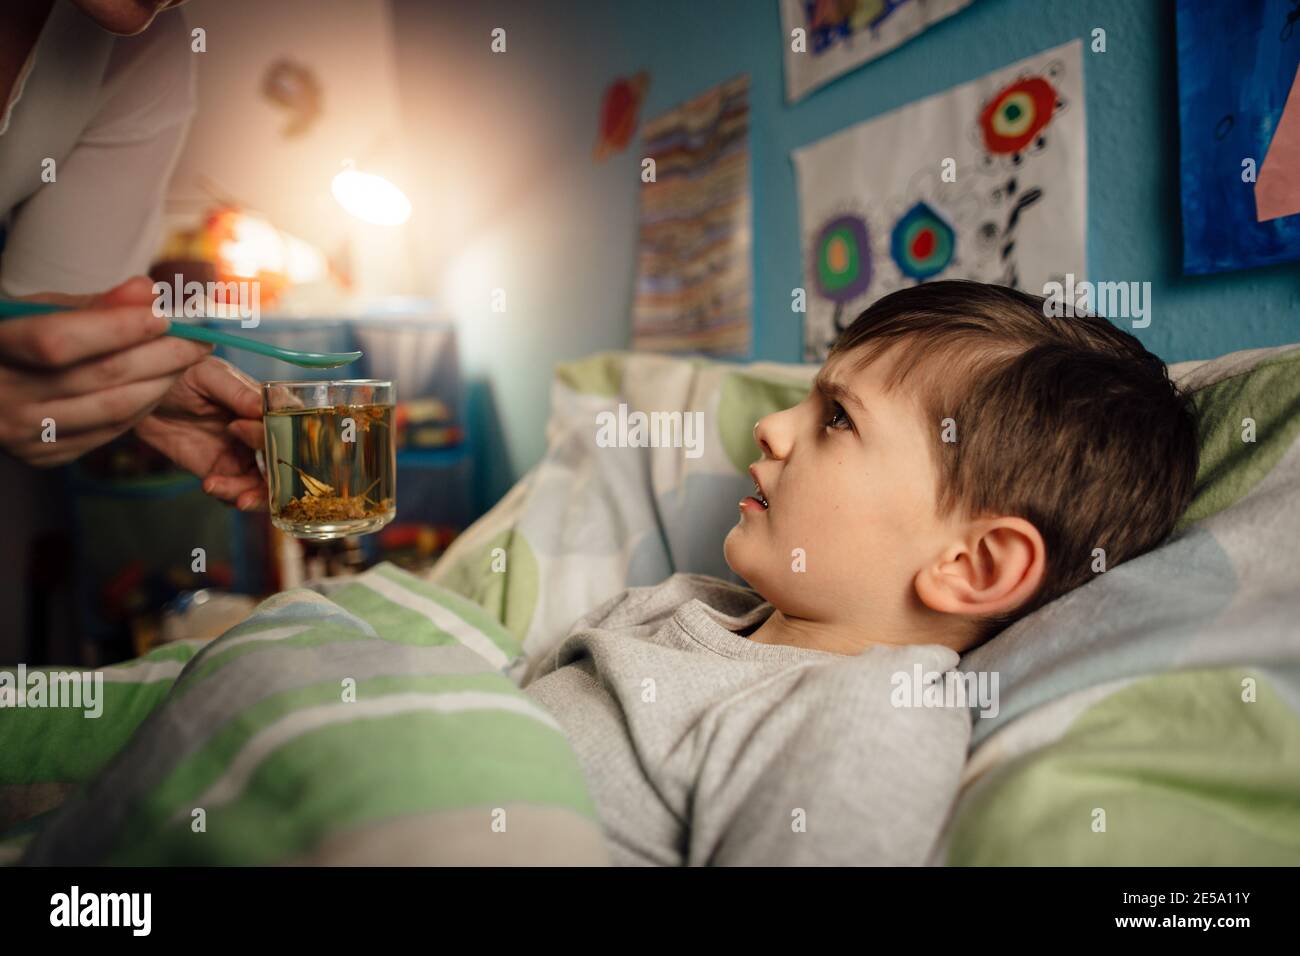 Ein krankes Kind, das in seinem Zimmer im Bett liegt und sich weigert, eine Medizin einzunehmen. Ein Junge, der nicht bereit ist, eine Arznei von seiner Mutter zu nehmen. Stockfoto